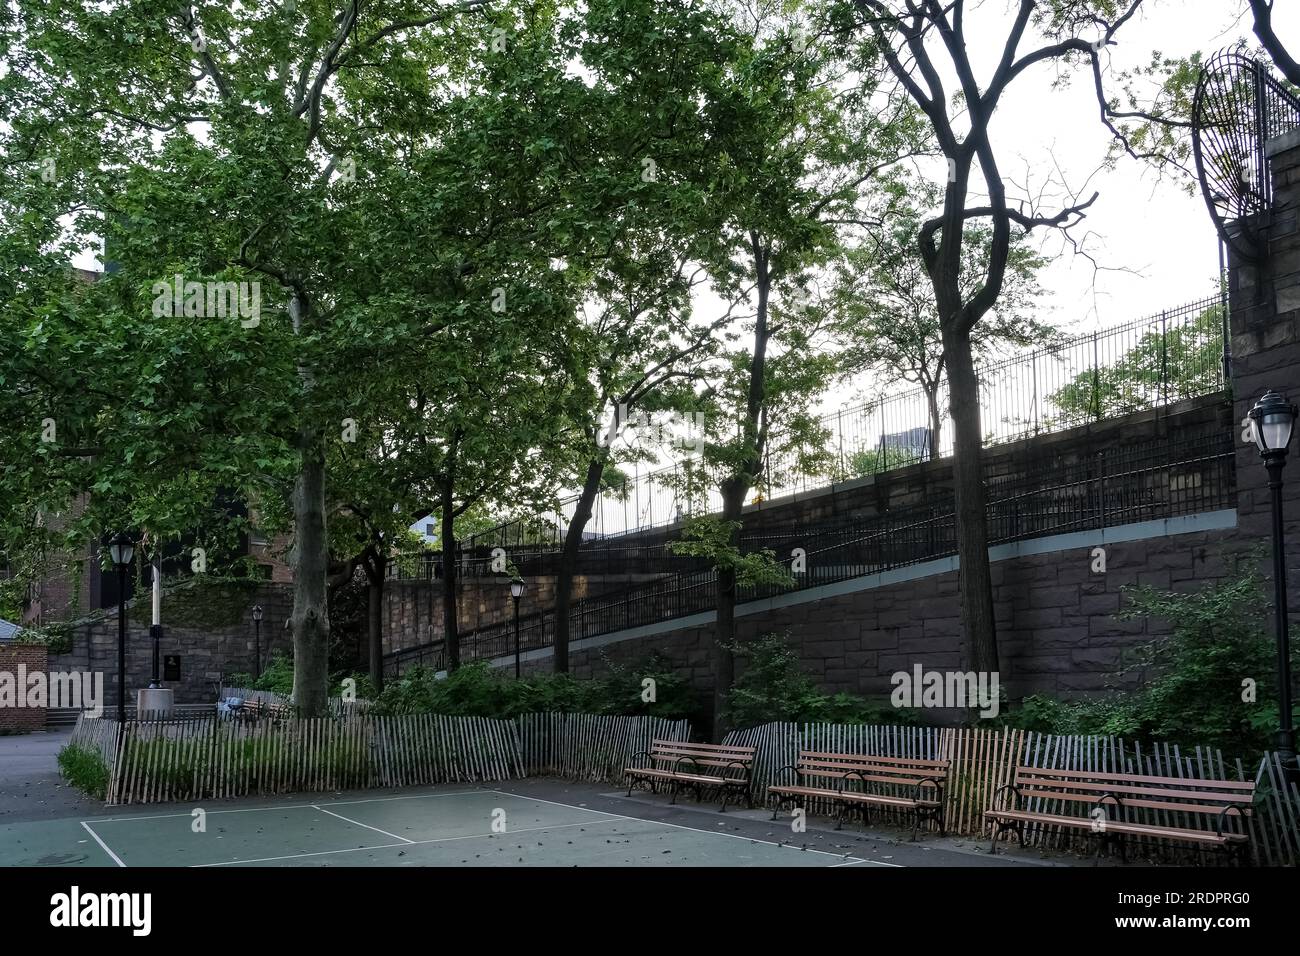 Dettaglio architettonico del Brooklyn Bridge Park, un parco sul lato di Brooklyn dell'East River a New York City Foto Stock